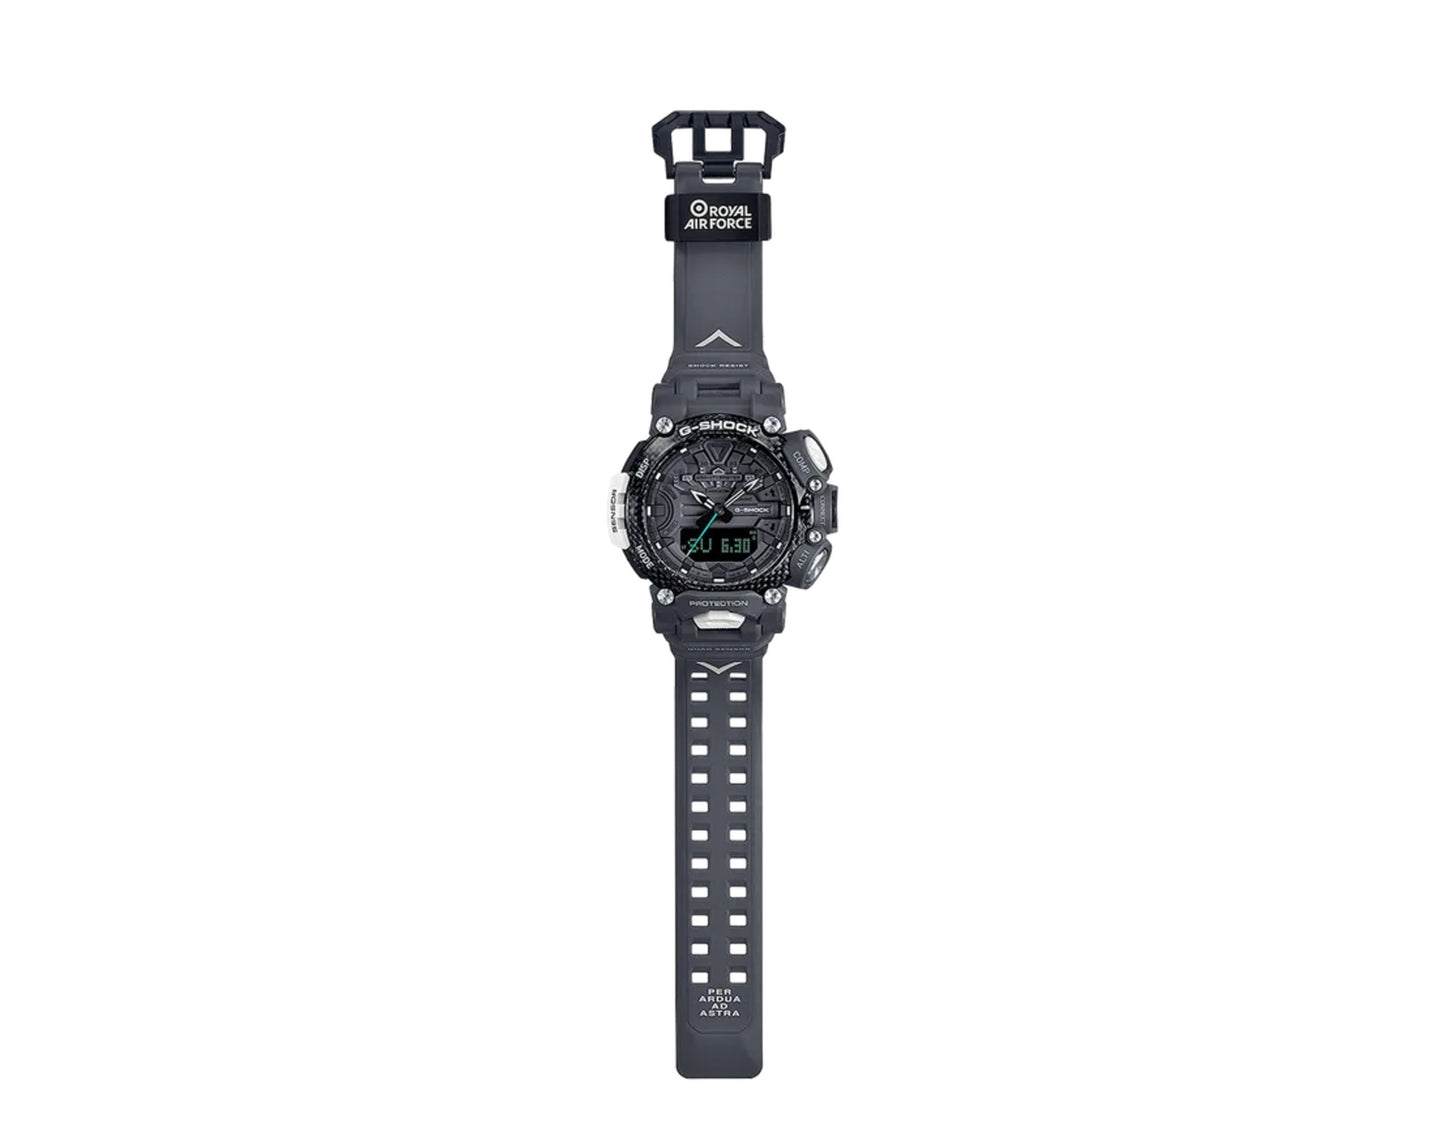 Casio G-Shock x Royal Air Force GravityMaster Analog Digital Resin Watch GRB200RAF-8A